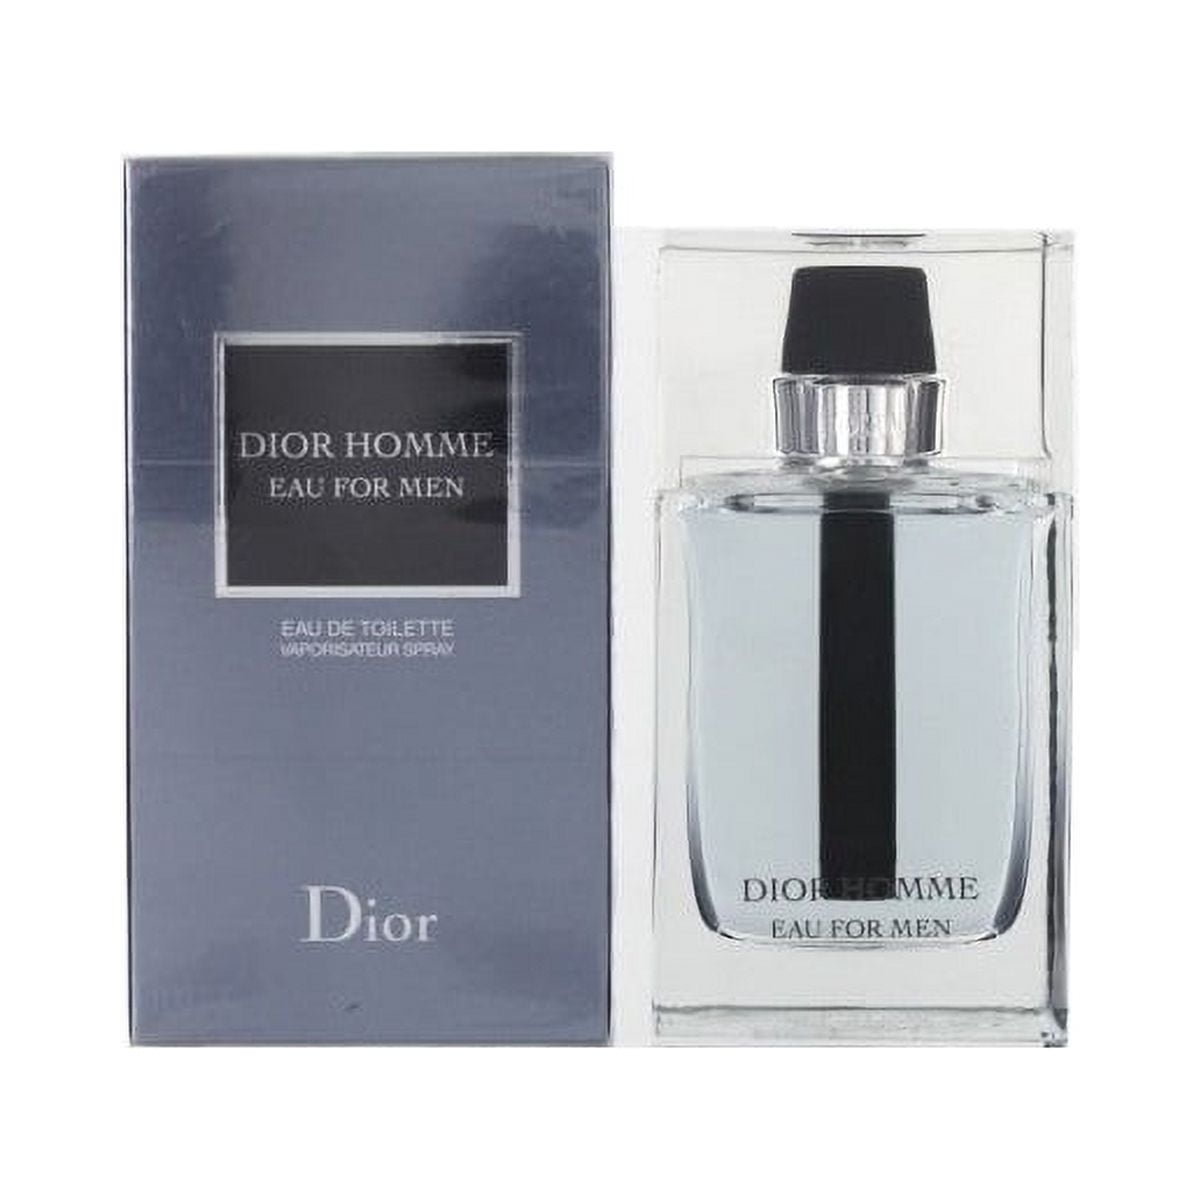 Dior Homme Eau For Men Eau de Toilette 3.4 oz / 100 ml Sealed